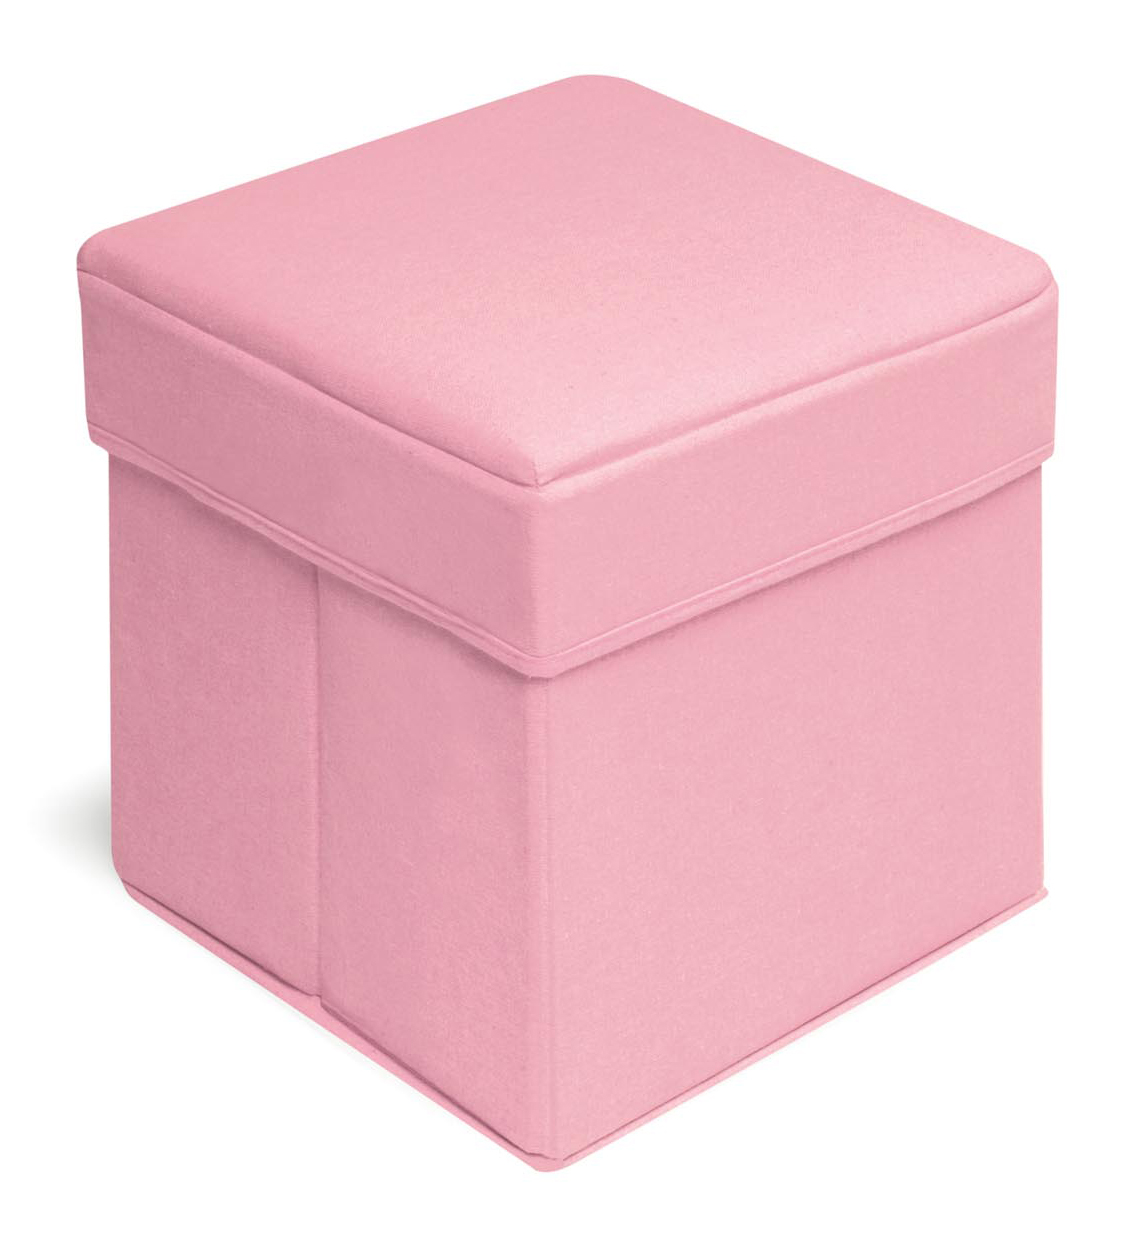 Folding Storage Seat - Pink